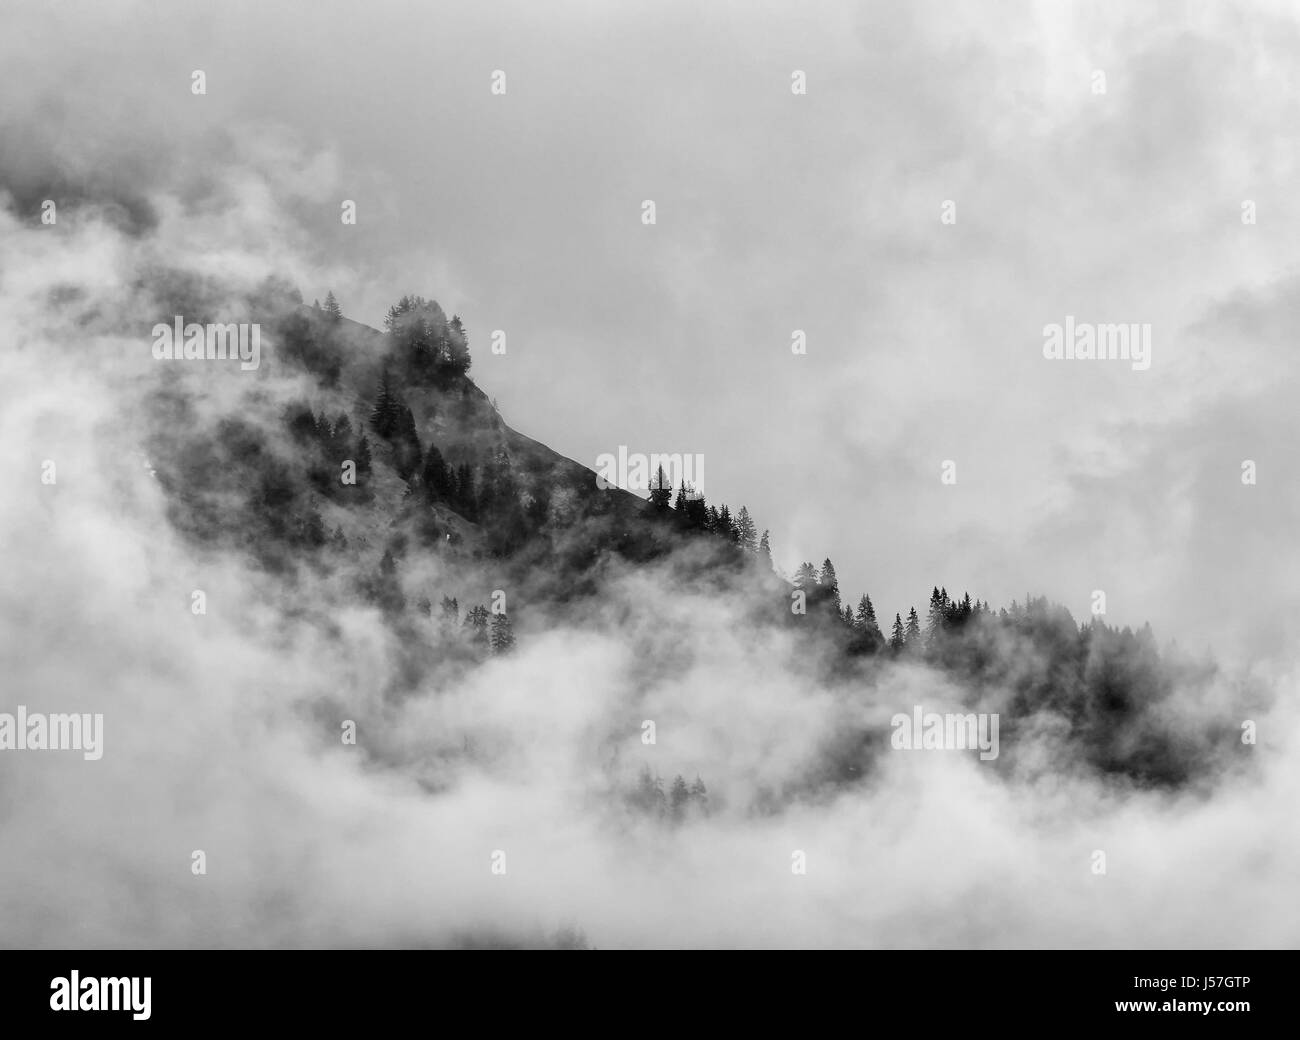 Switzerland mountain side trees enveloped in swirling cloud Stock Photo